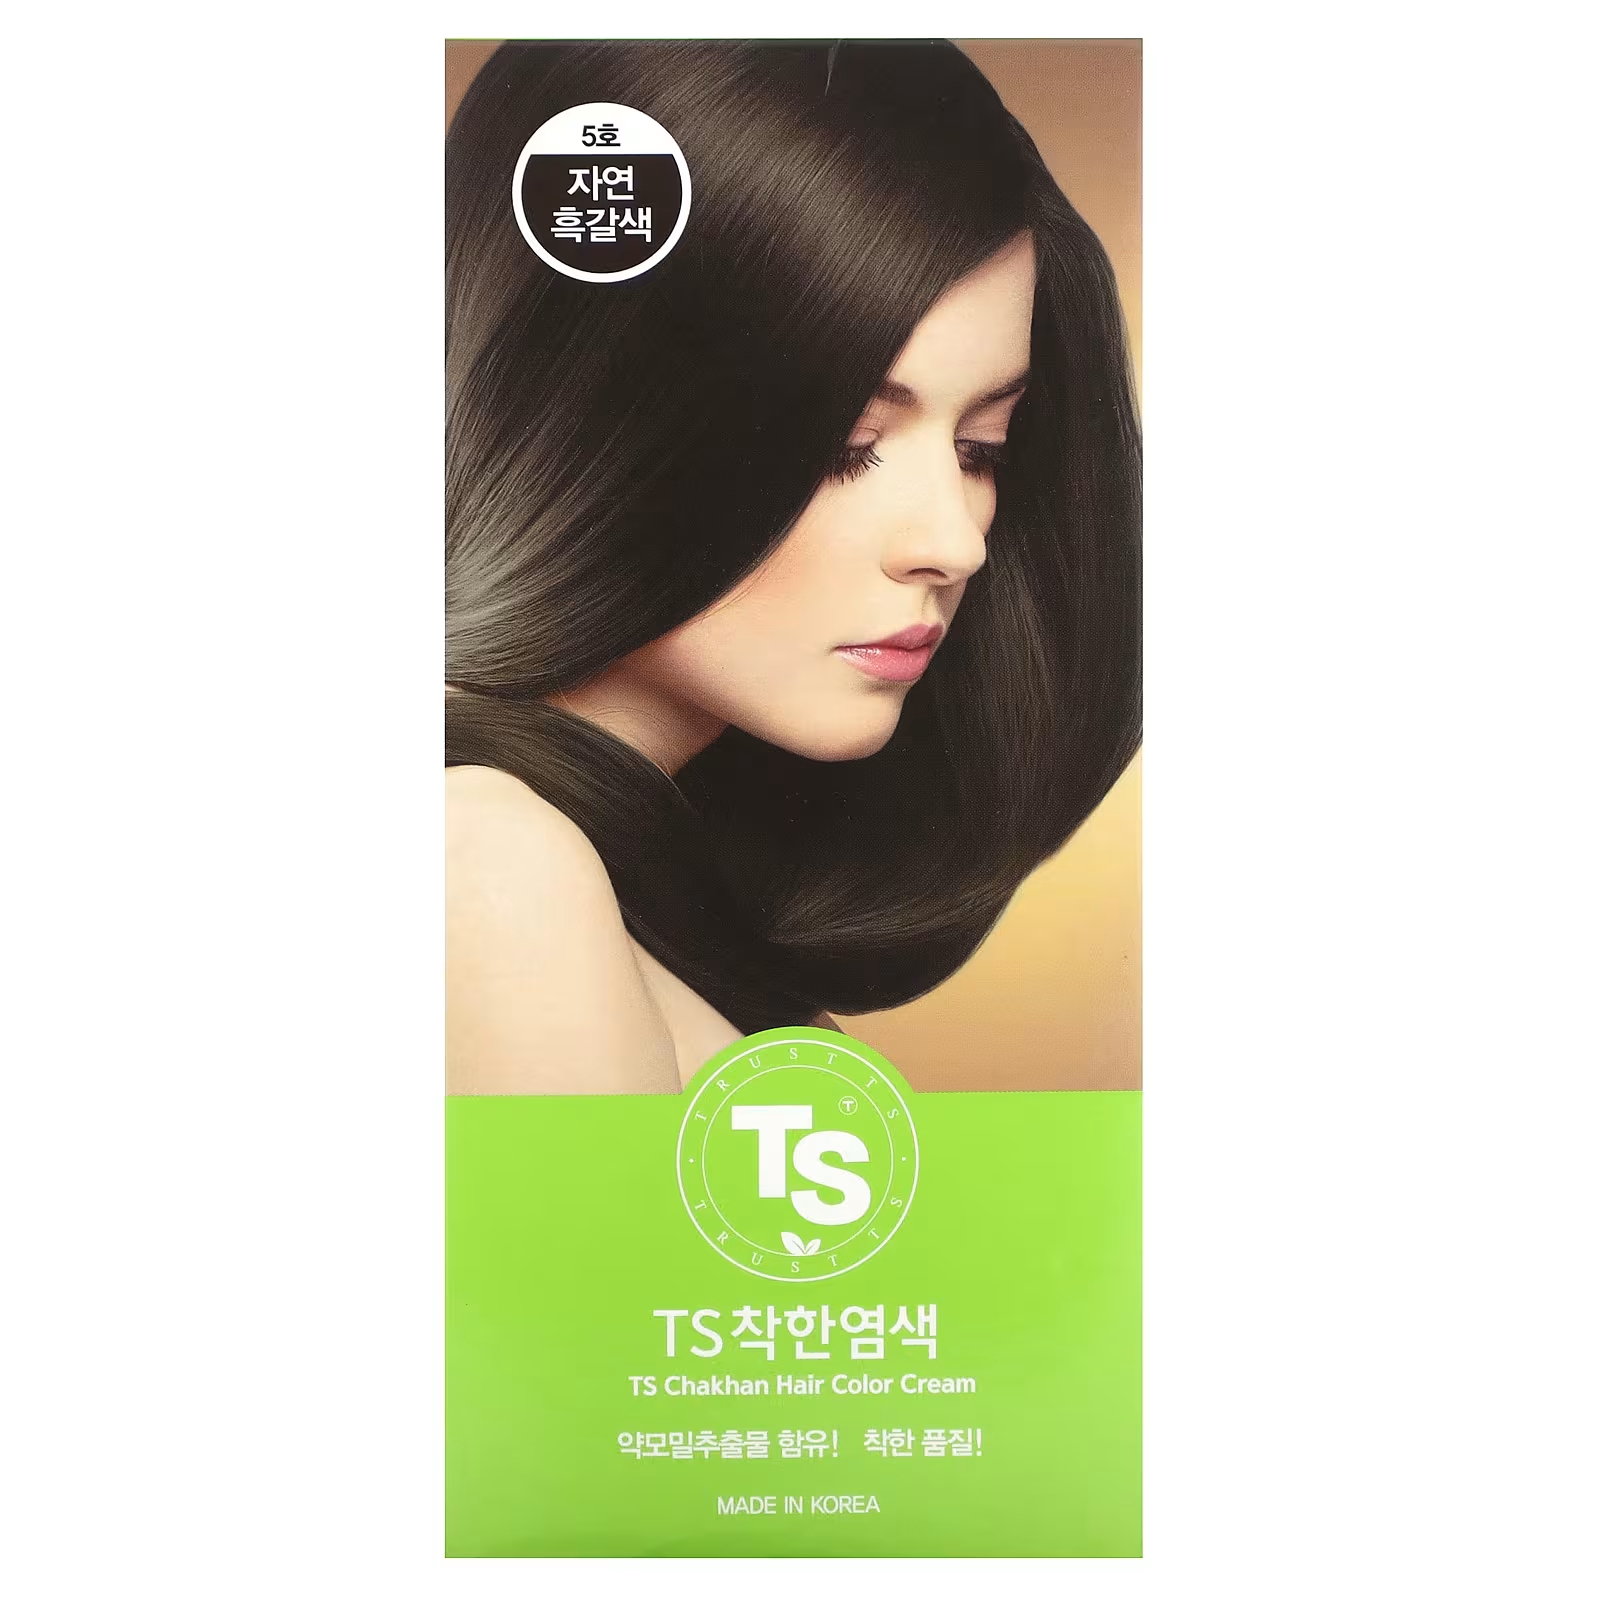 TS Trillion Крем-краска для волос Чахан №5 темно-коричневый набор из 7 предметов ts trillion ts chakan крем краска для волос 3 натуральный черный 1 комплект